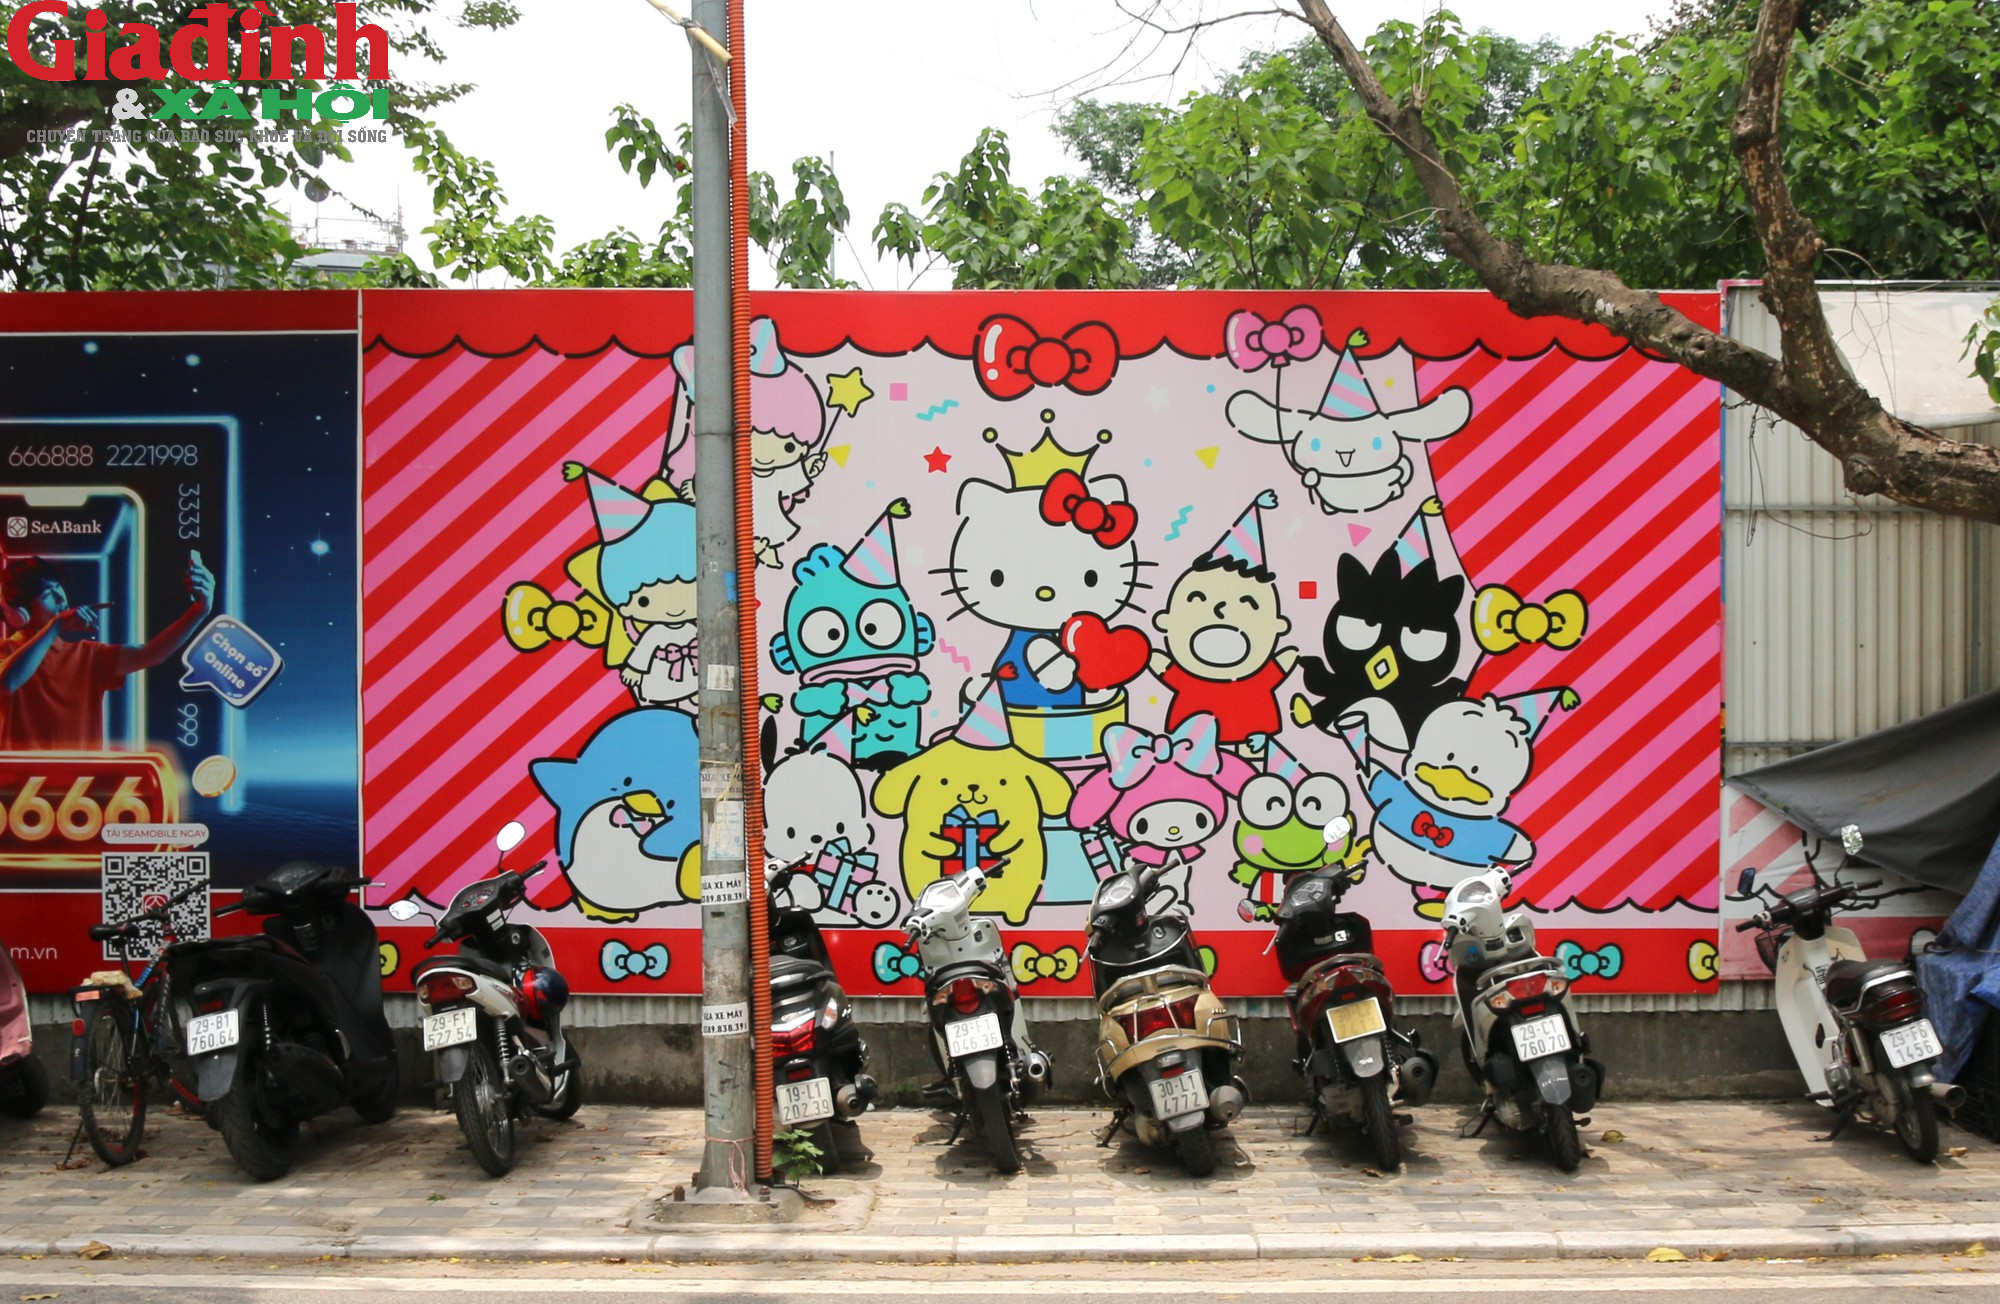 Cận cảnh công viên Hello Kitty bị Hà Nội chấm dứt hoạt động, thu hồi dự án - Ảnh 4.